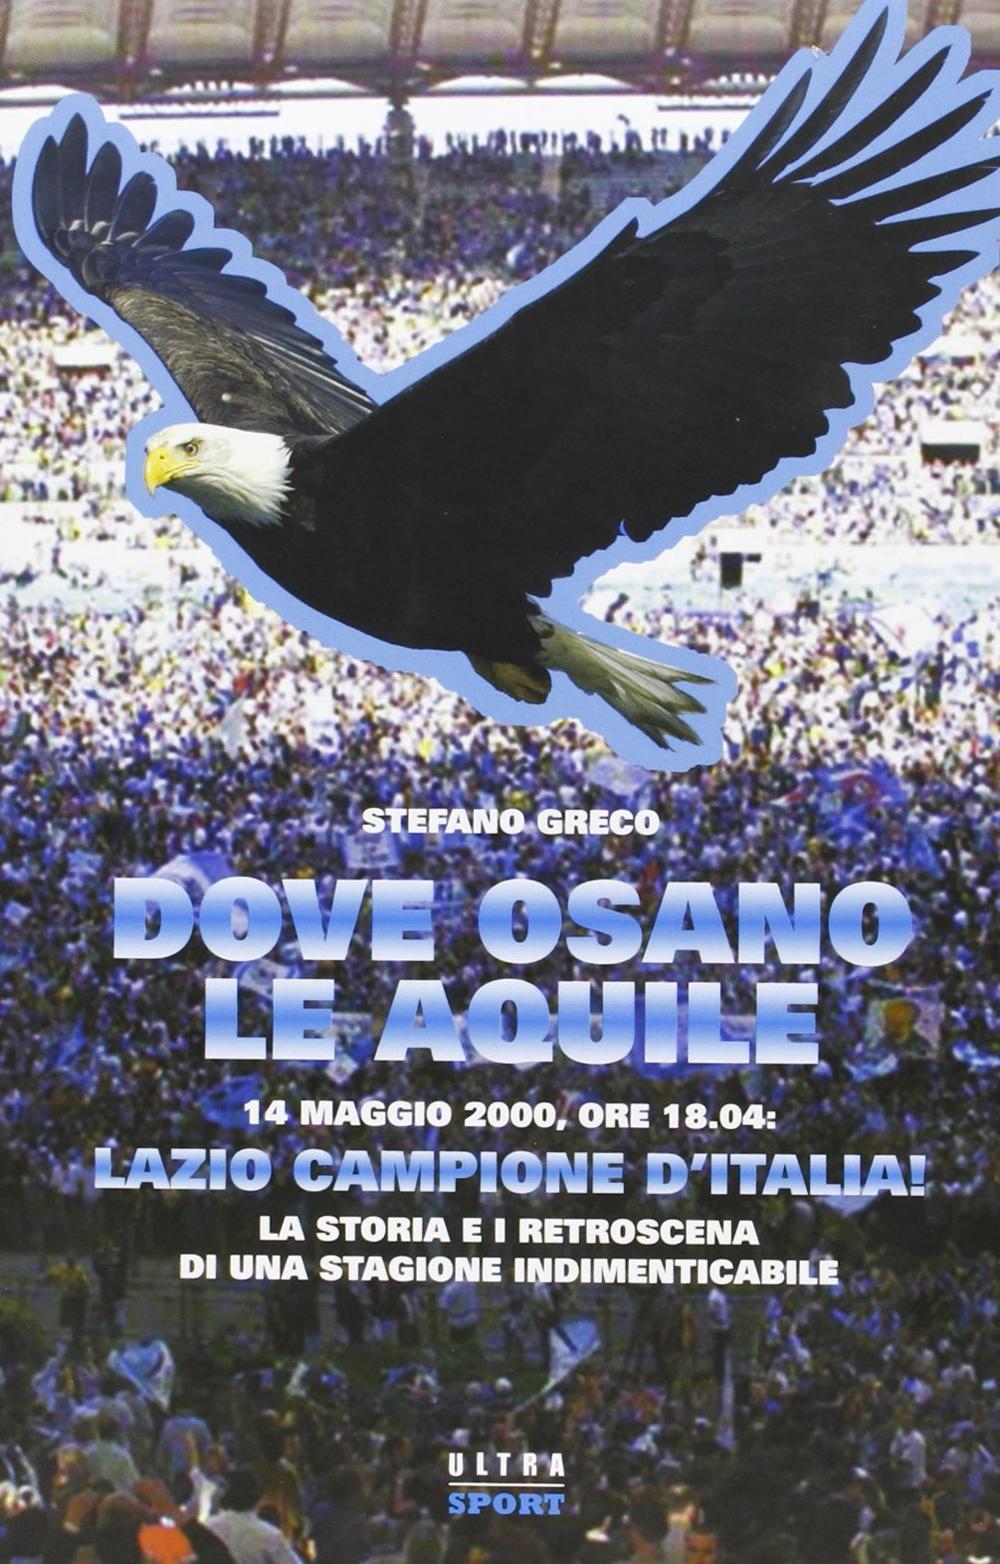 Dove osano le aquile. 14 maggio 2000: Lazio campione d'Italia! La storia e i retroscena di una stagione indimenticabile